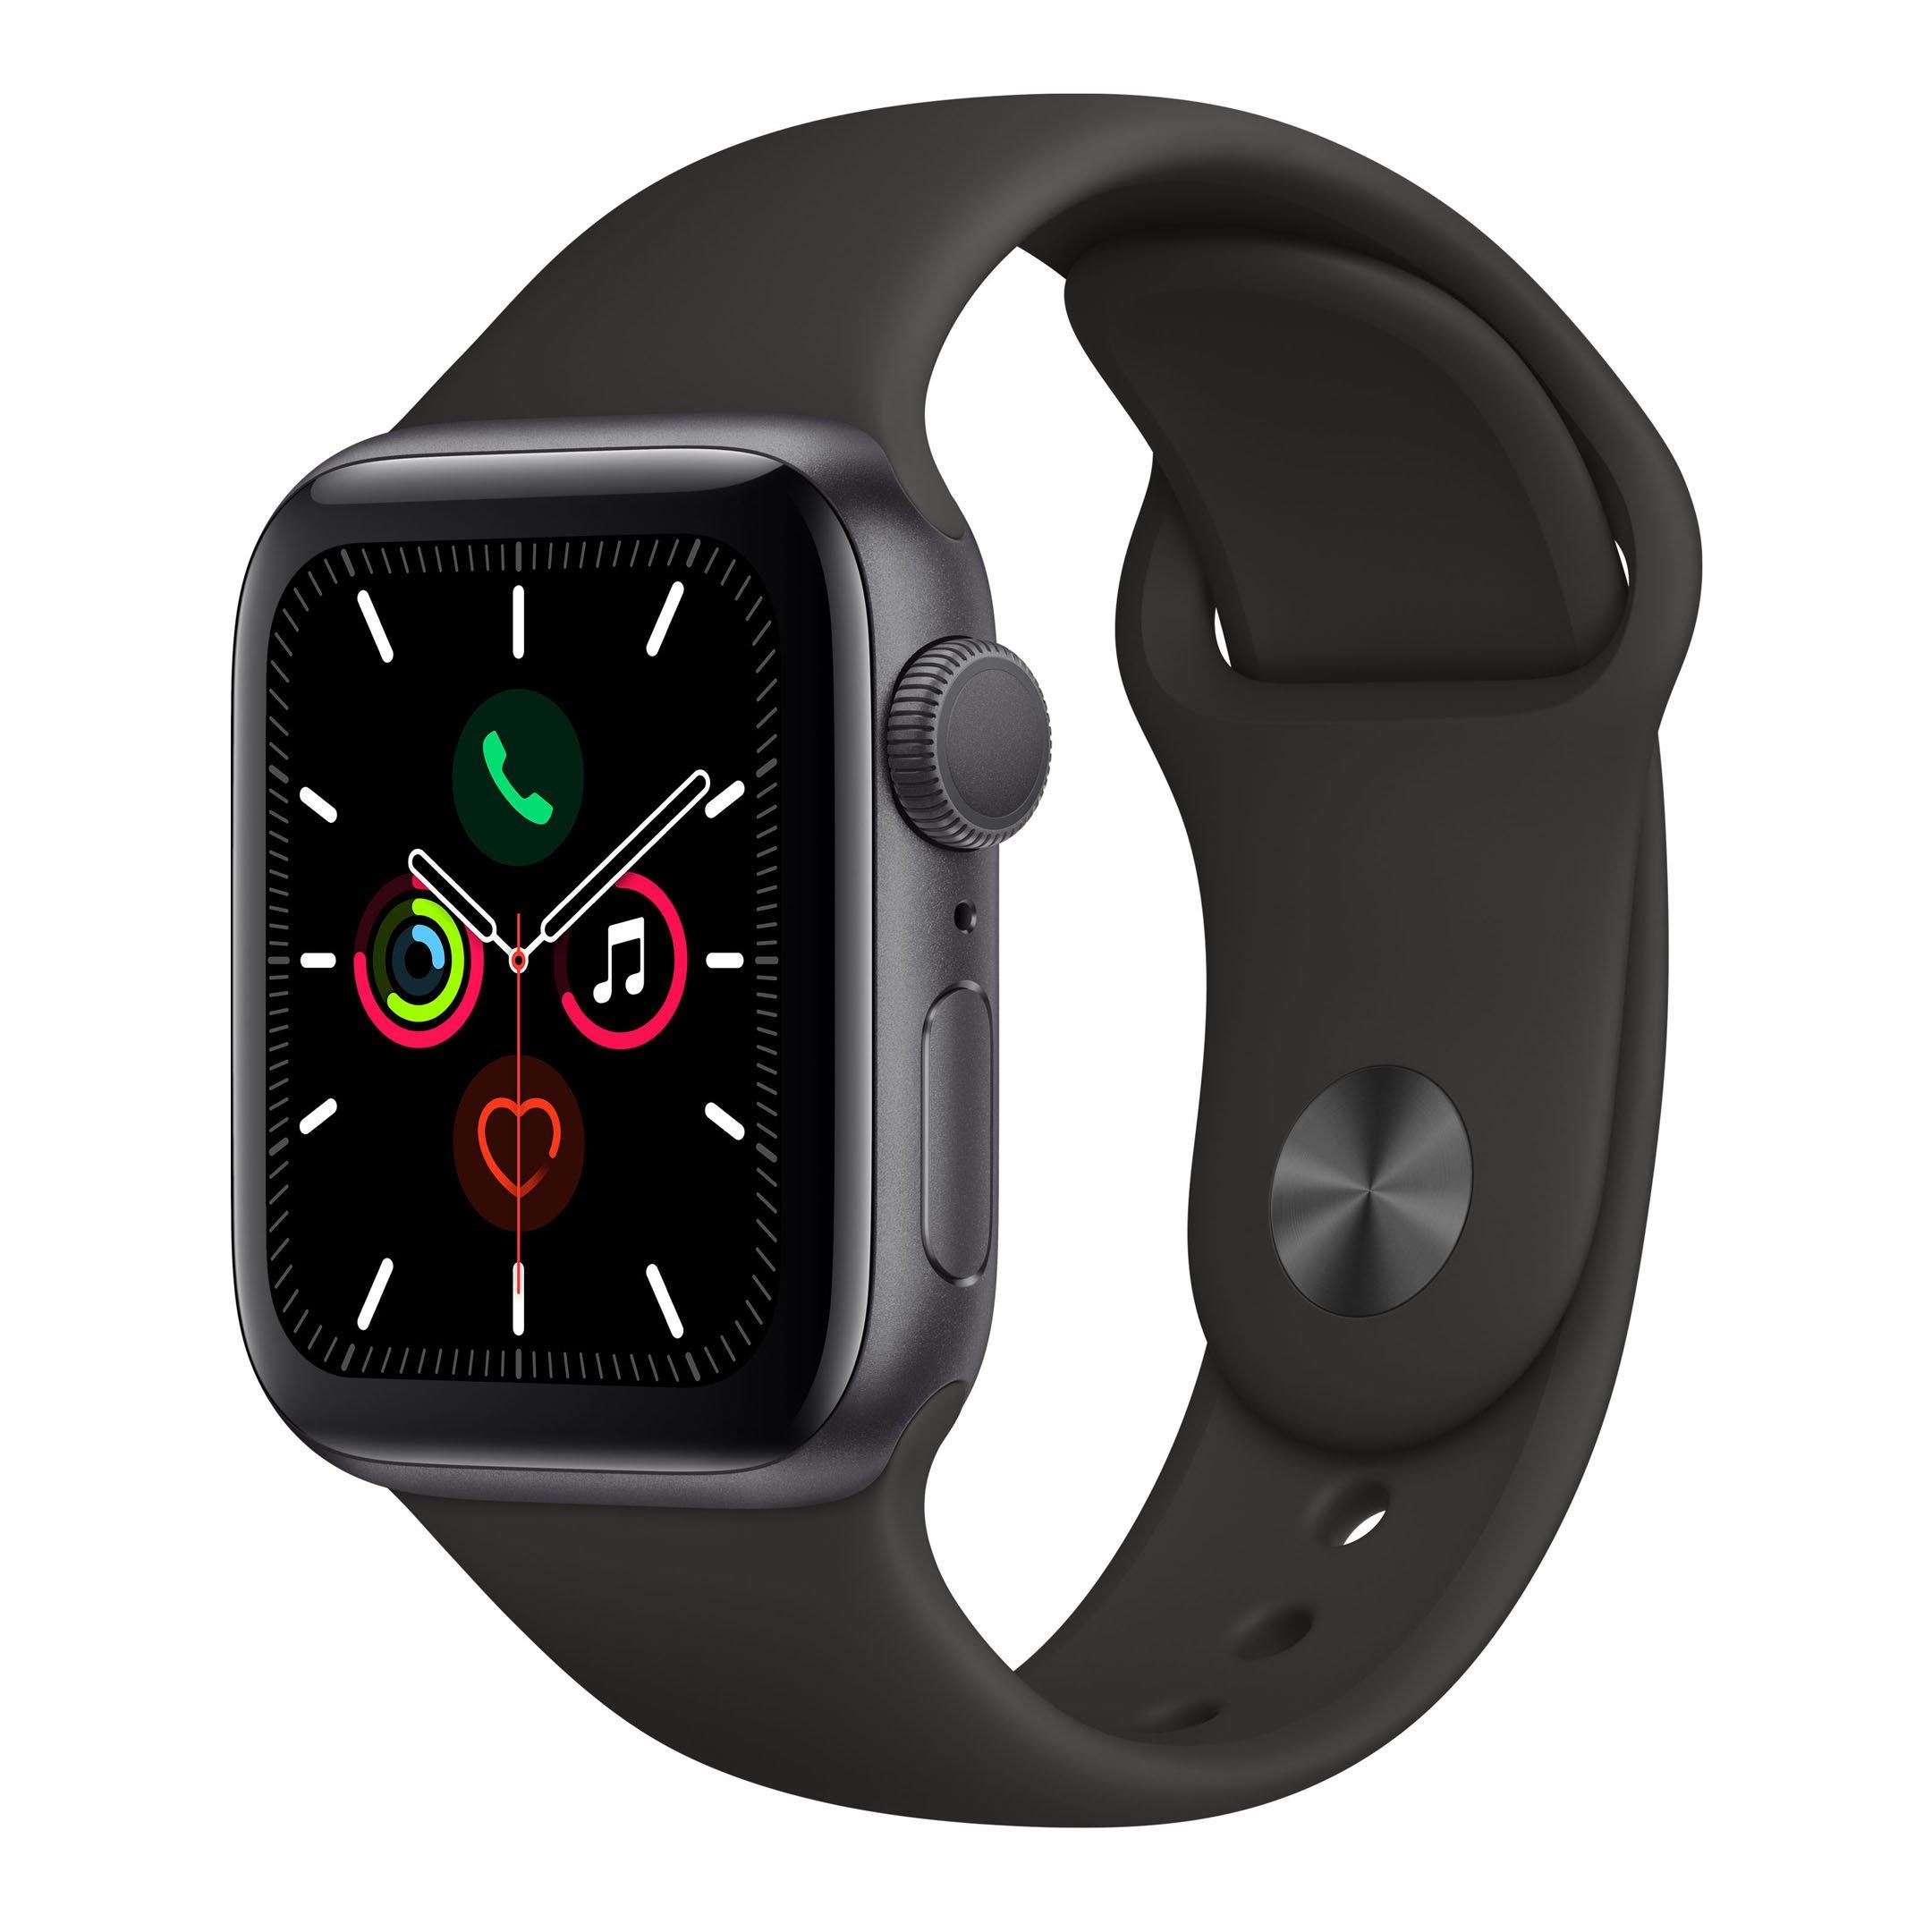 Apple Watch Series 5 ، 44mm ، GPS ، إطار رمادي ، حزام رياضي أسود ، إكسترا السعودية